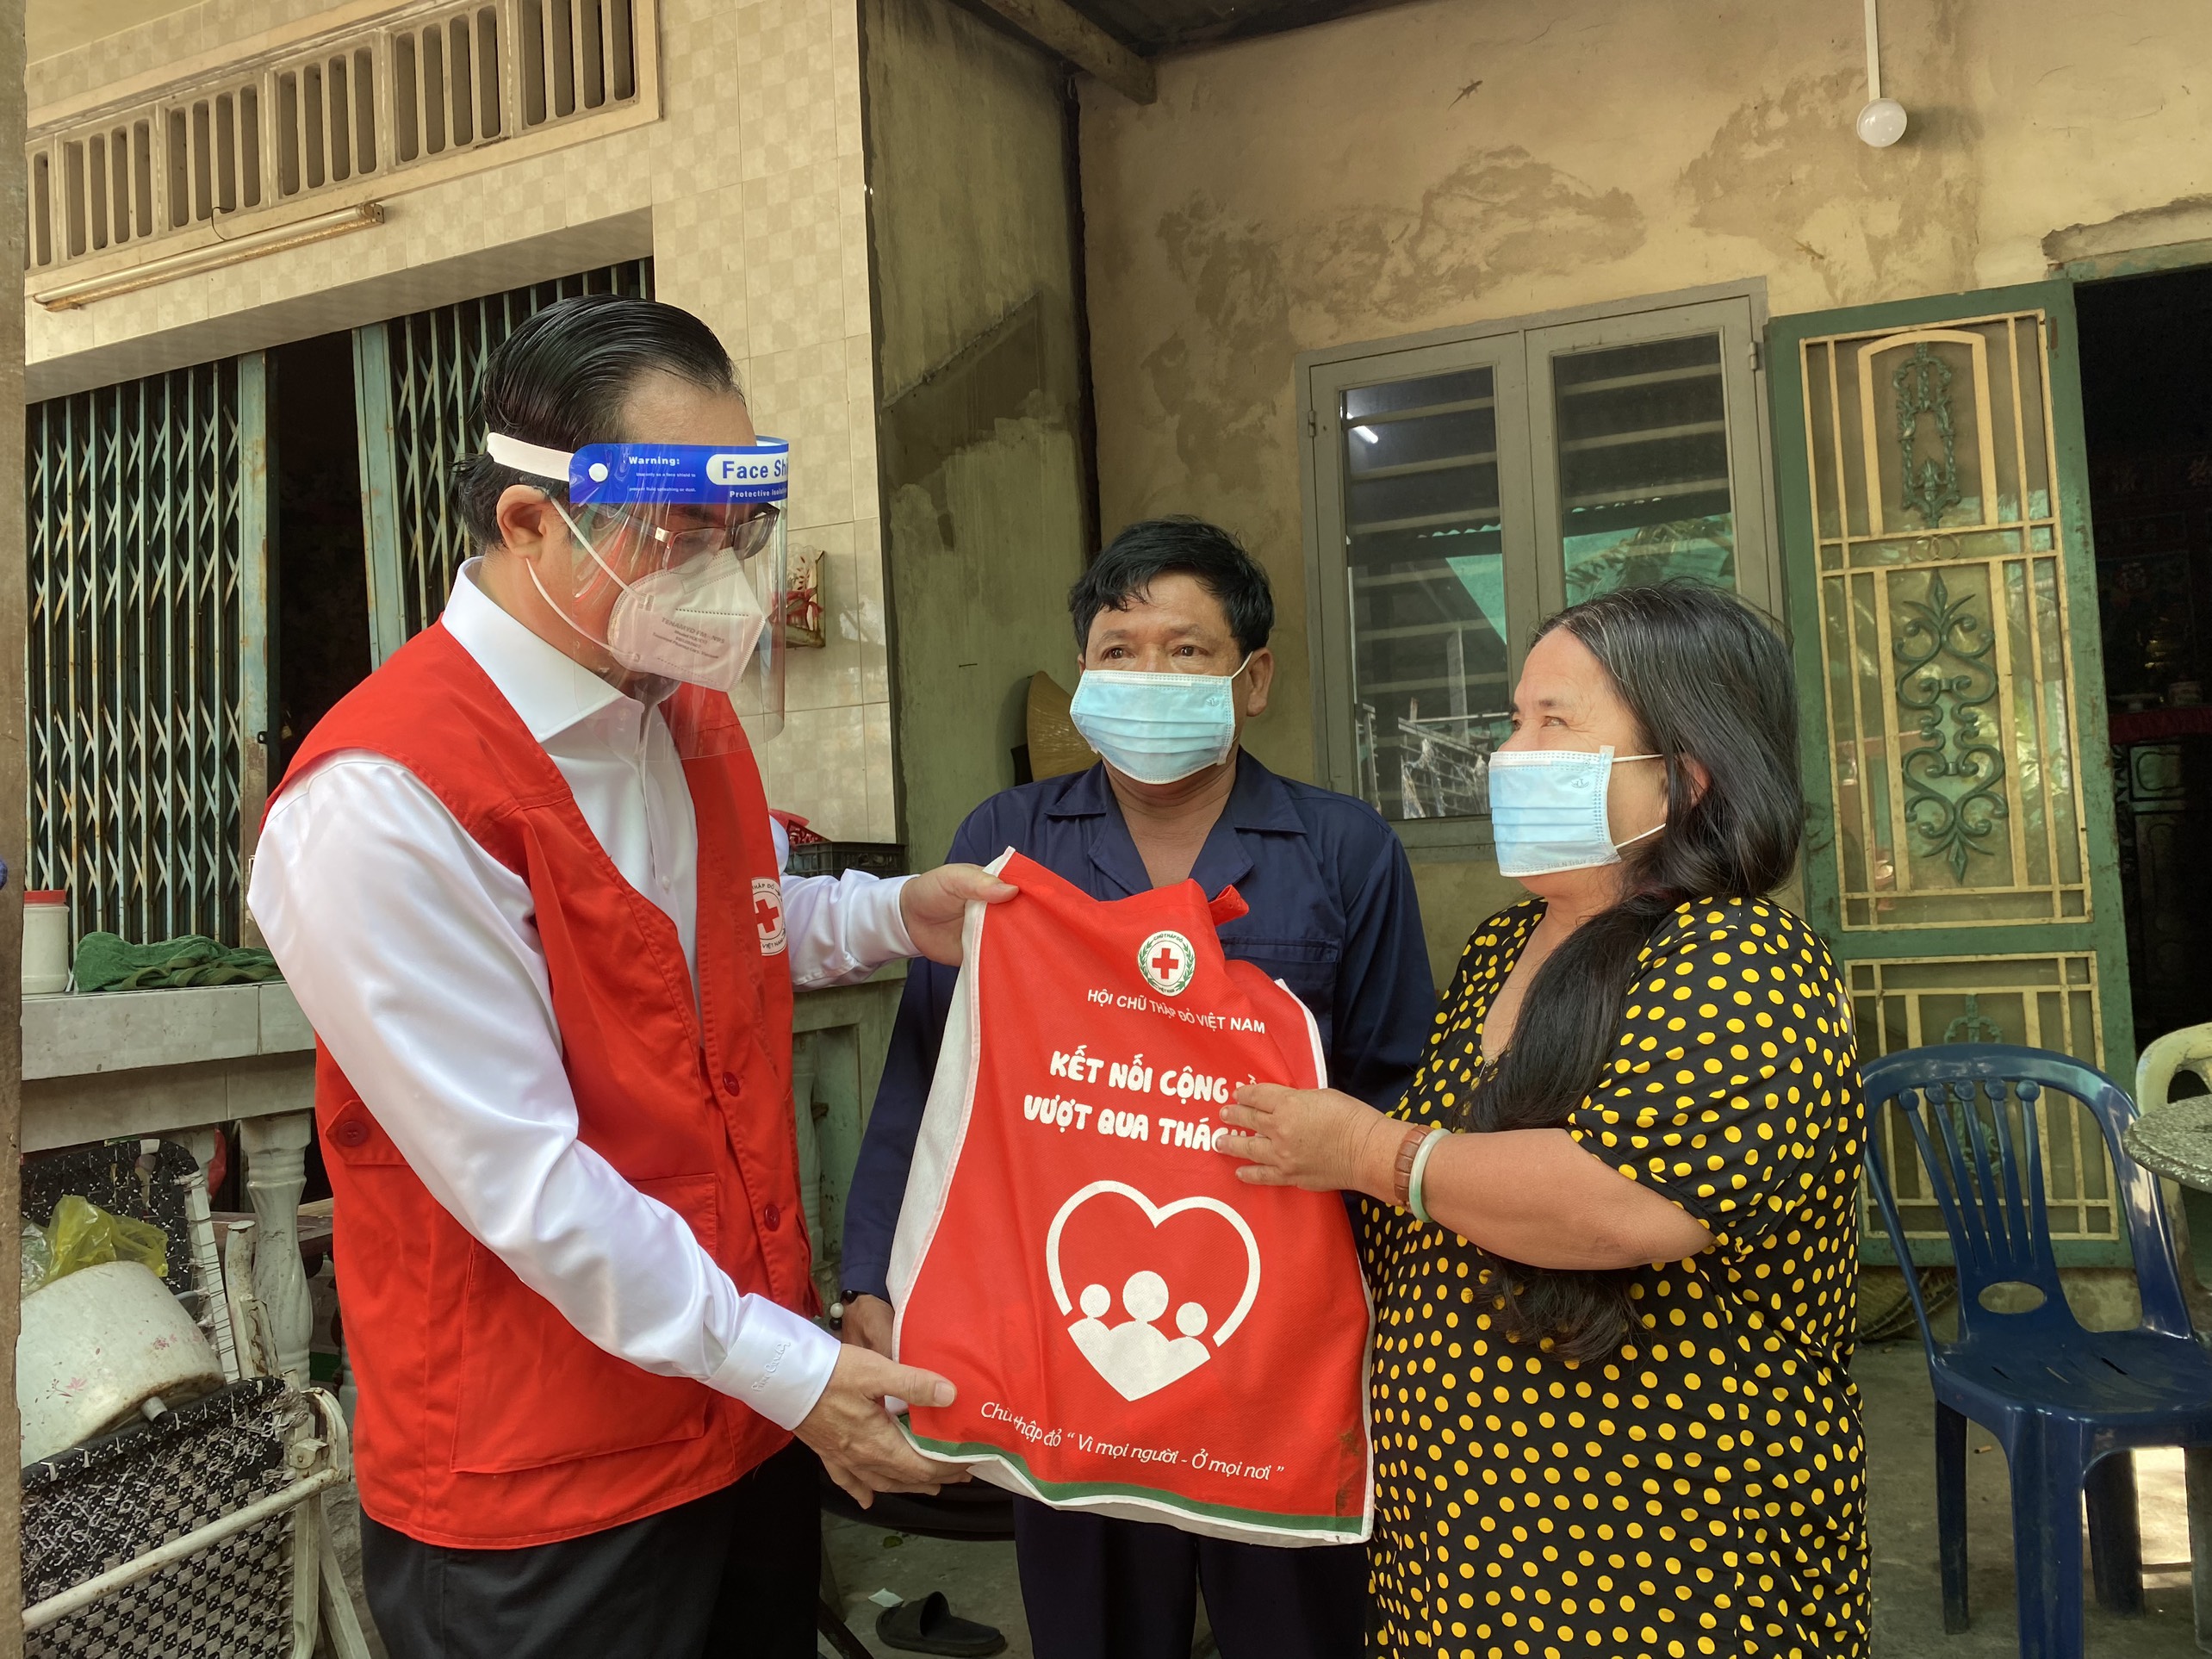 Hội Chữ thập đỏ Việt Nam: Tặng 3.000 “Túi hàng gia đình Chữ thập đỏ” hỗ trợ người dân bị ảnh hưởng bởi dịch bệnh Covid - 19 trên địa bàn TP.Hồ Chí Minh